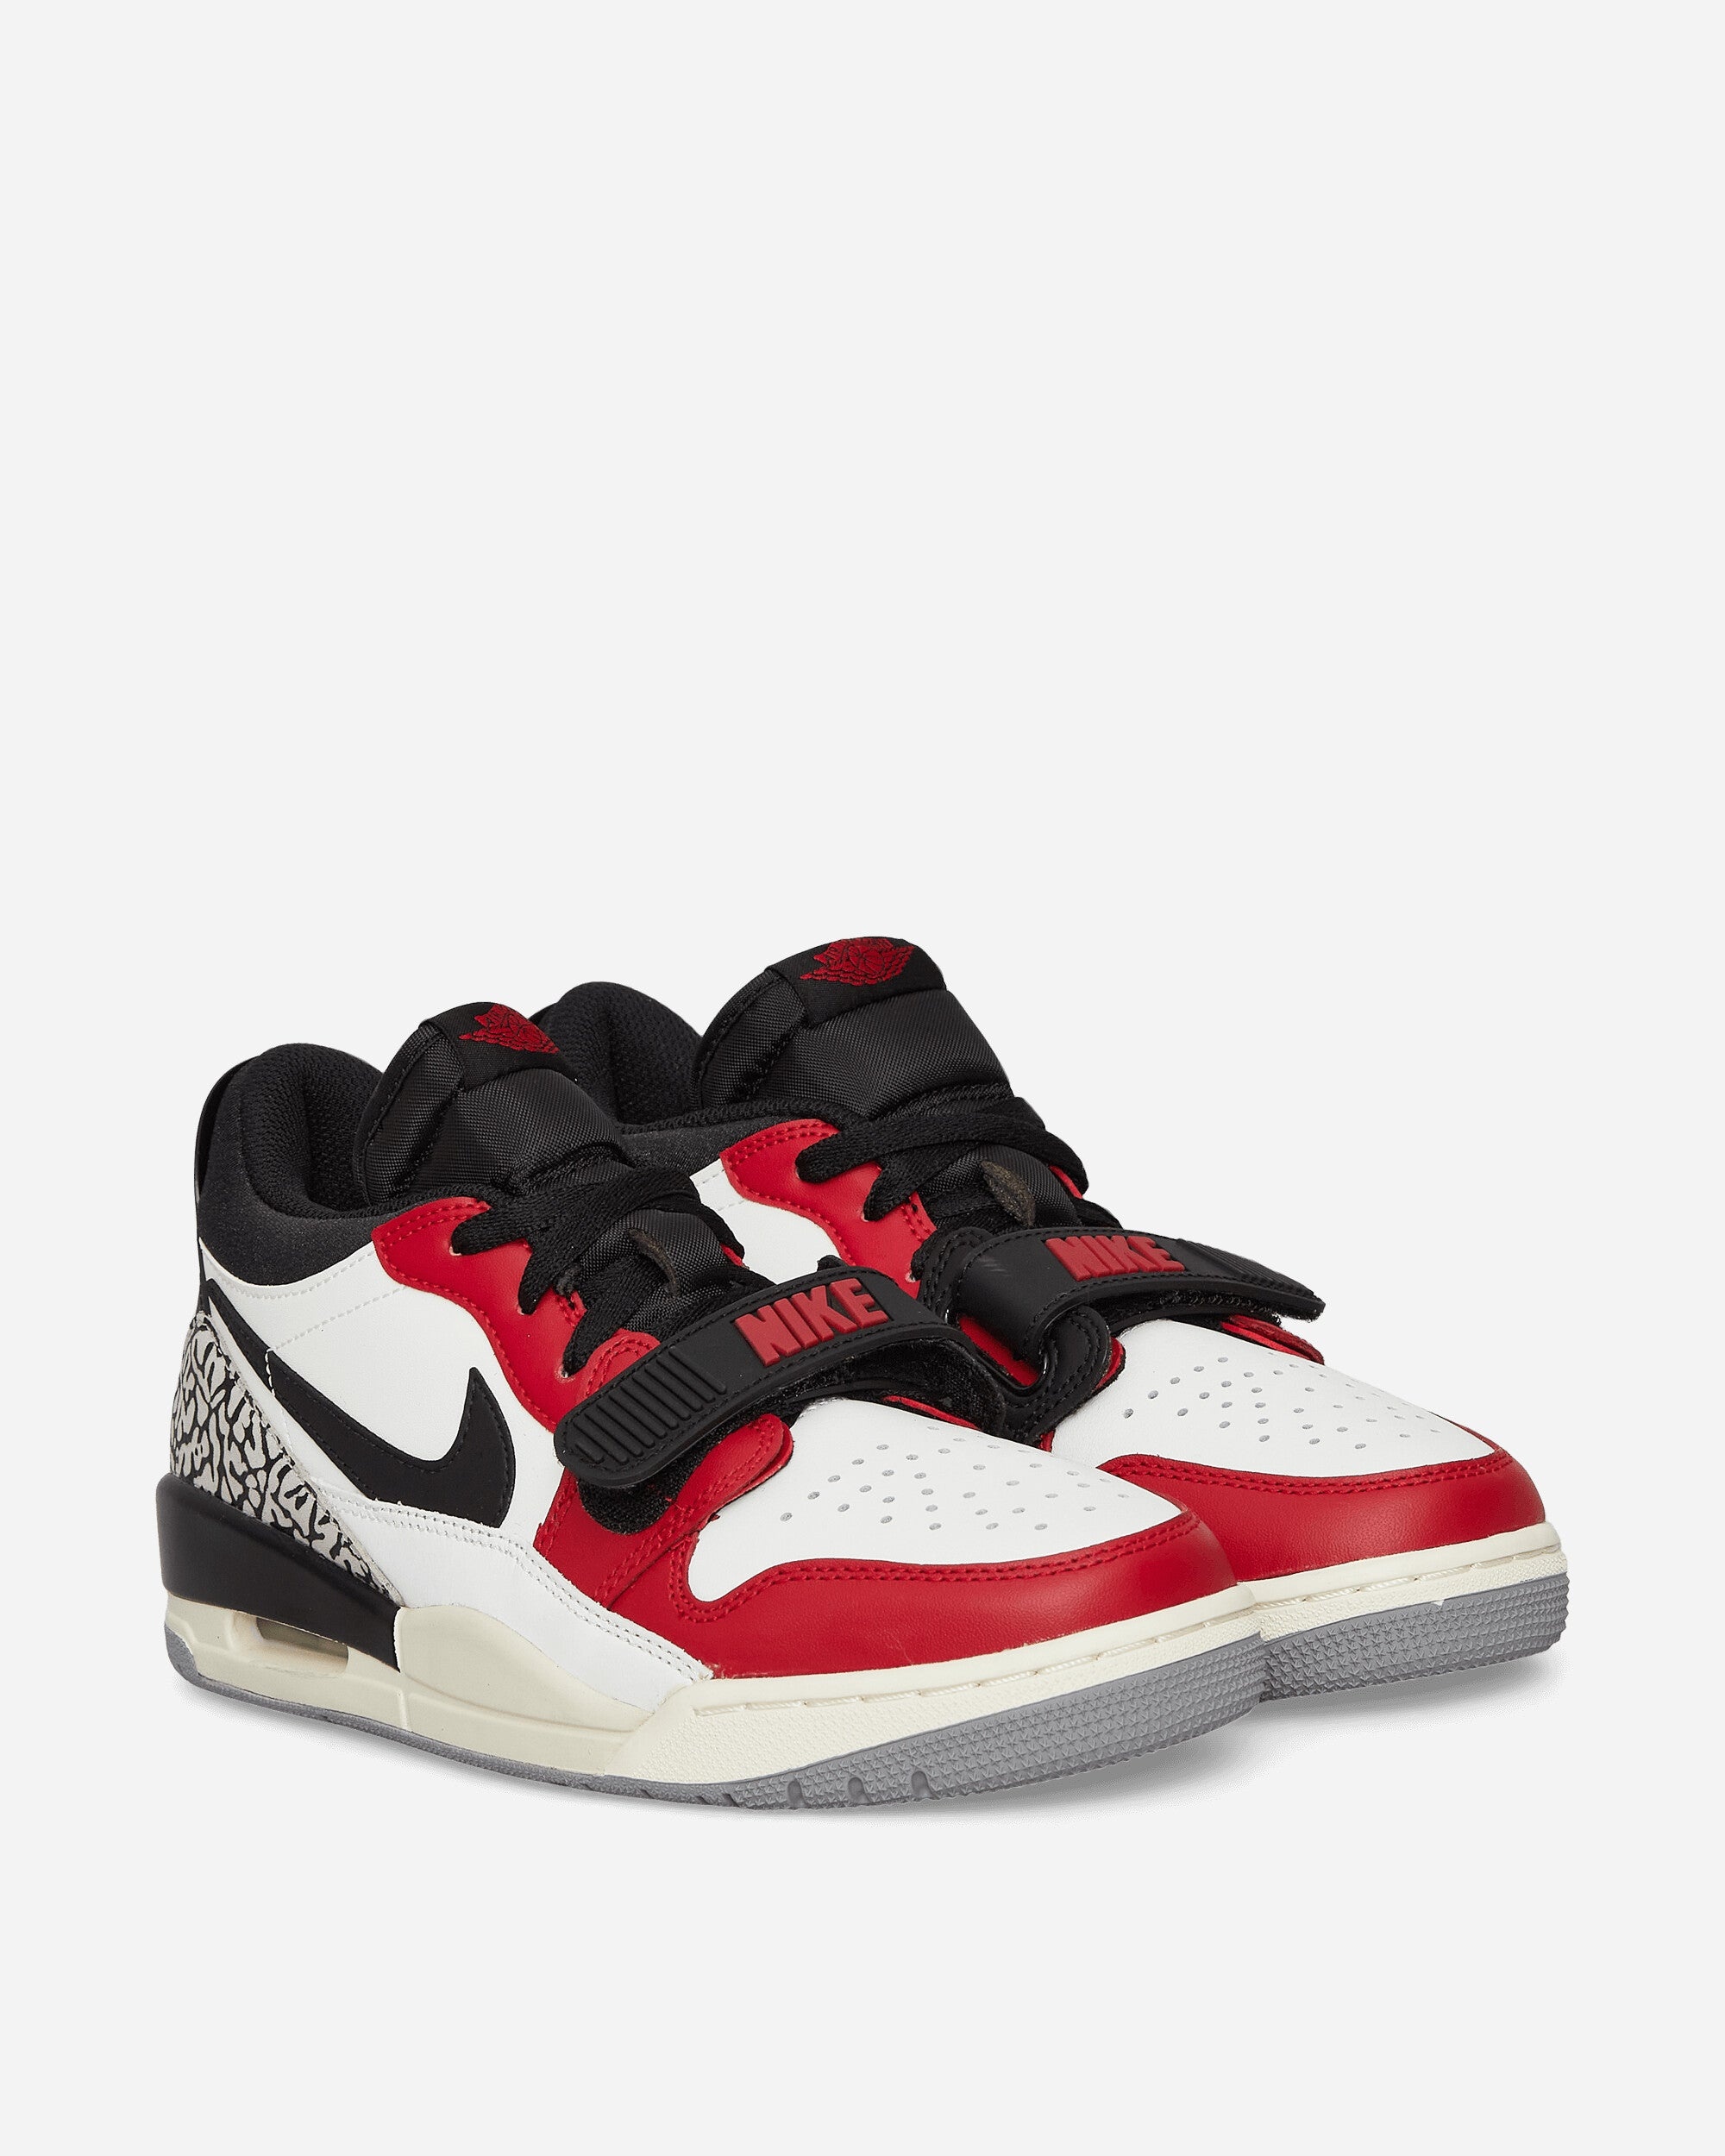 Air Jordan Legacy 312 Low Sneakers Summit White / Fire Red / Black - 2